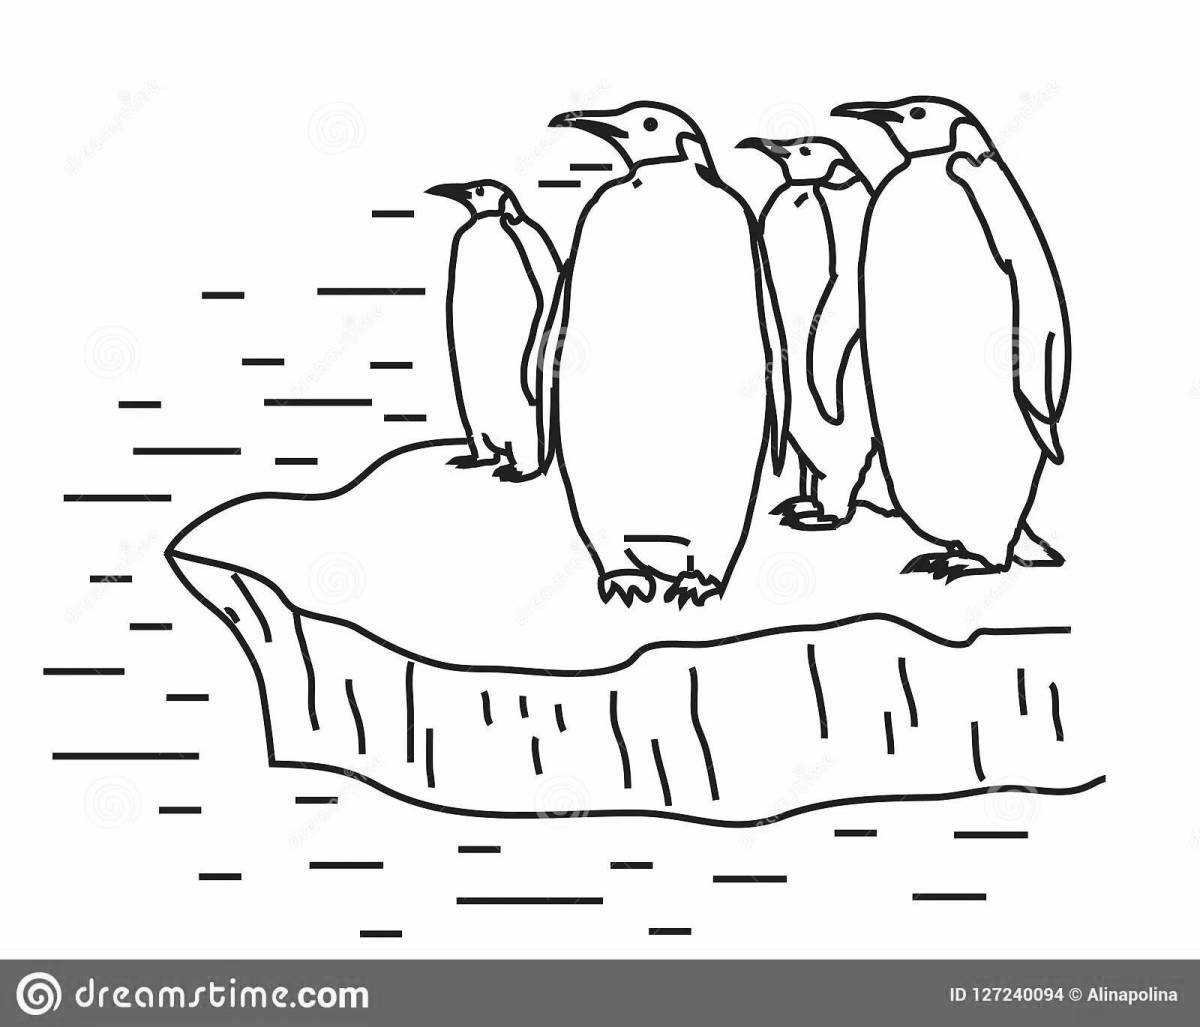 Причудливый пингвин на льдине раскраски для детей